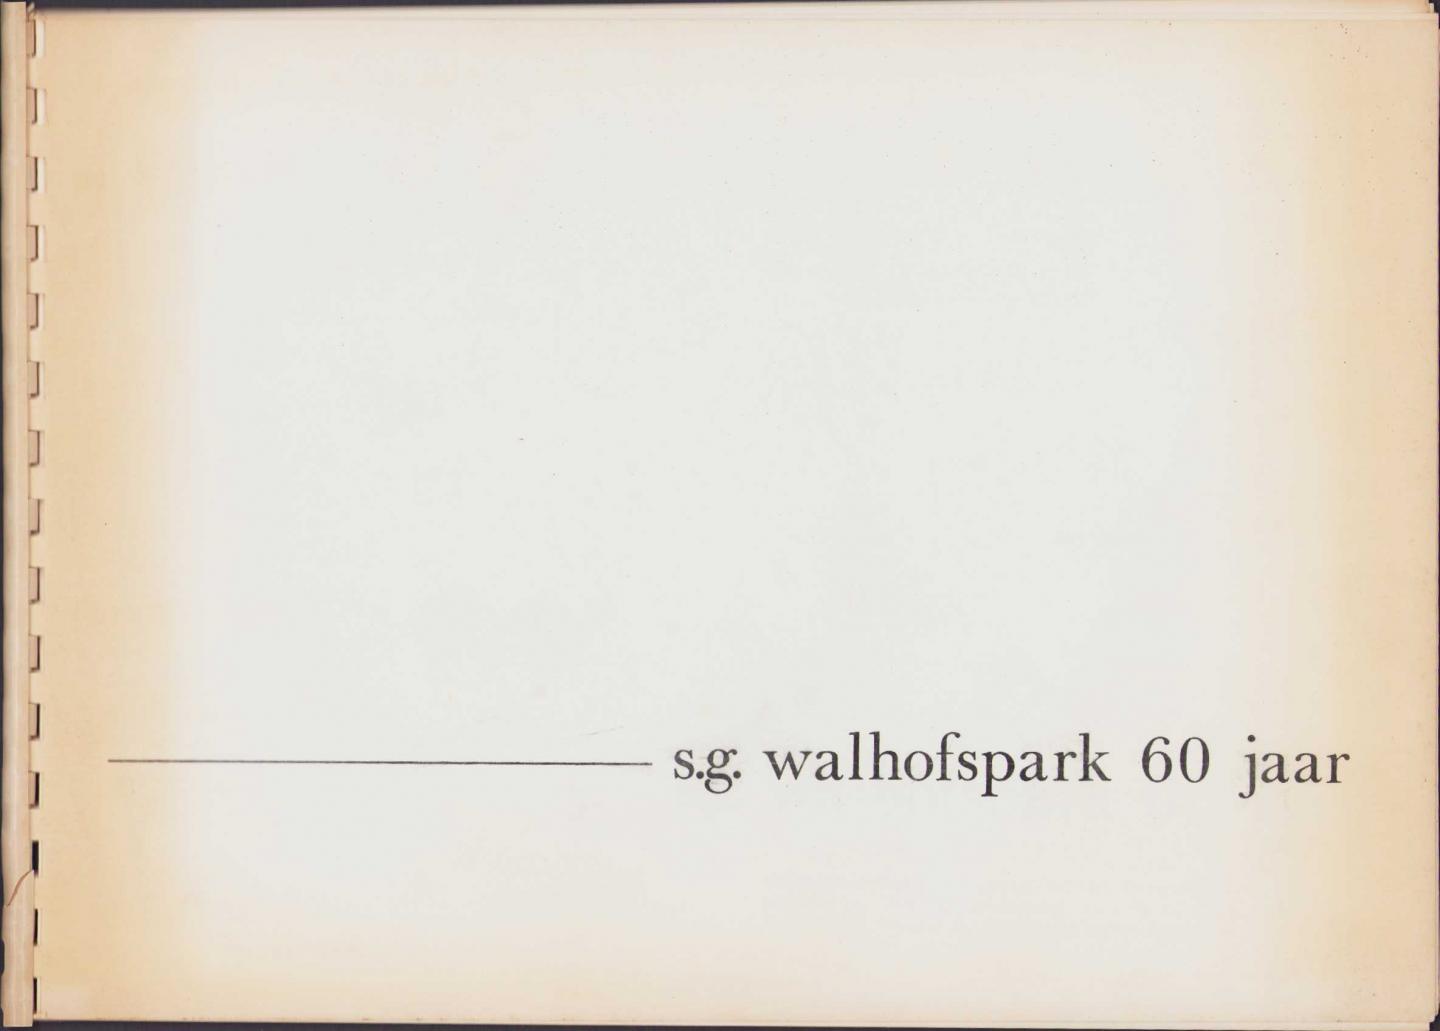 Jurriens G.H.A. en Tenbergen J.B.A. samenstelling - S.G. Walhofspark 60 jaar